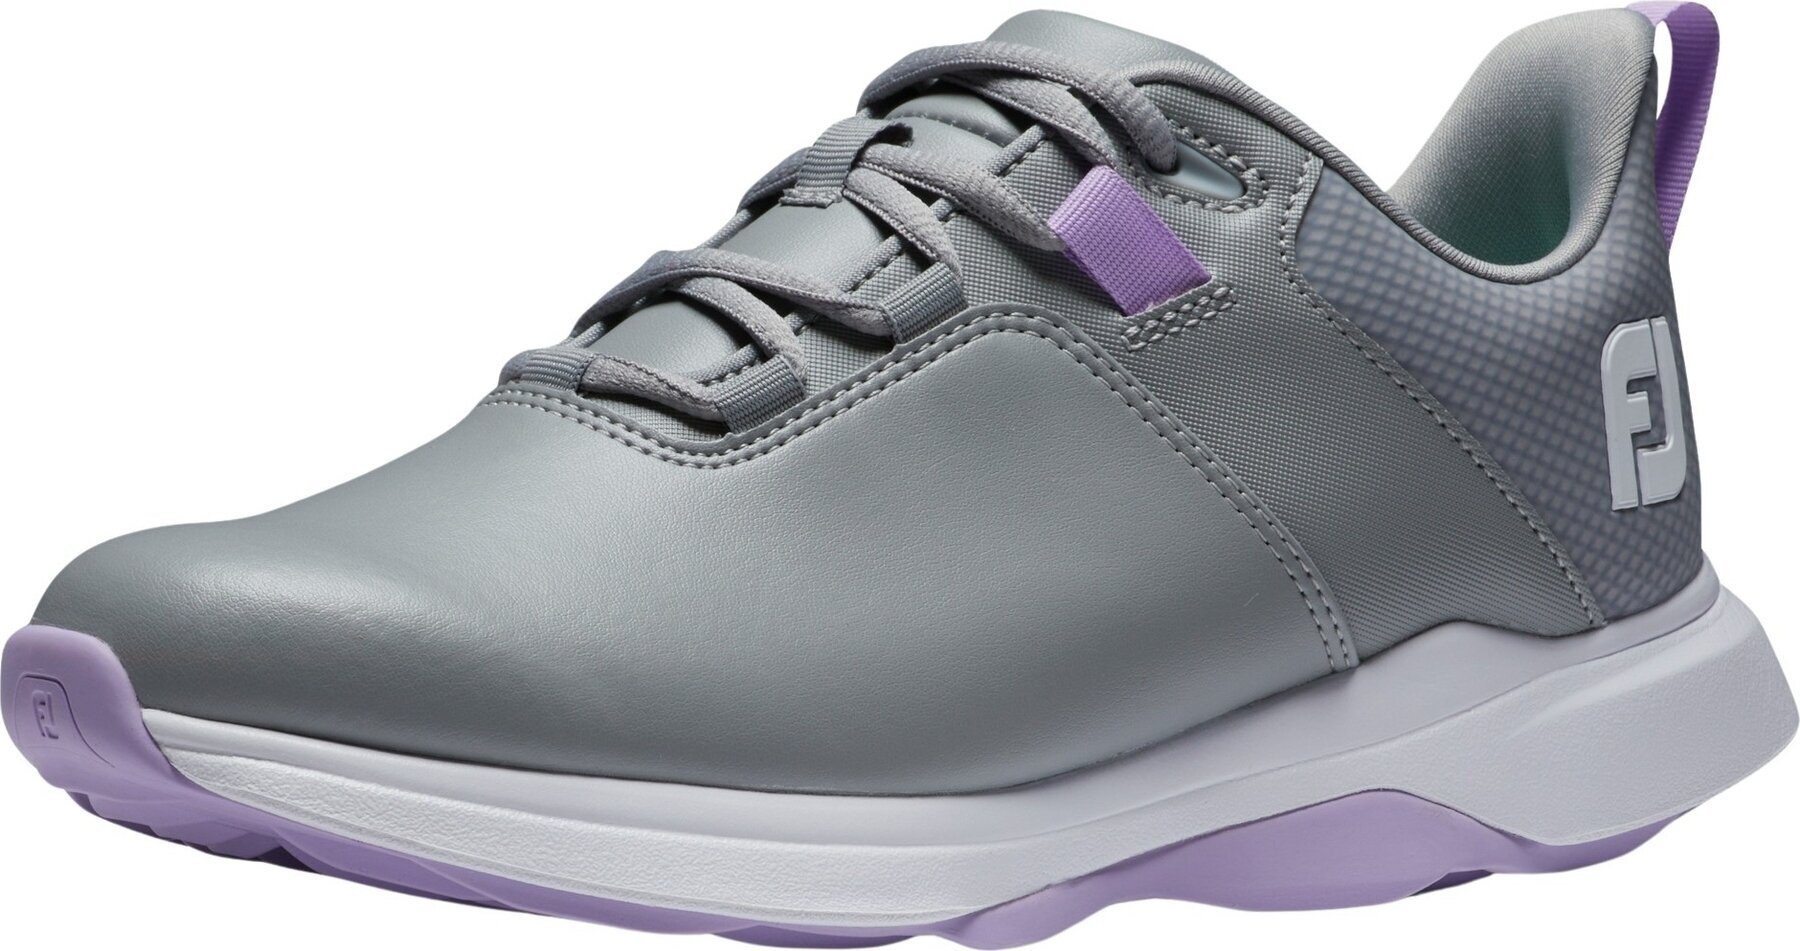 Γυναικείο Παπούτσι για Γκολφ Footjoy ProLite Womens Golf Shoes Grey/Lilac 40,5